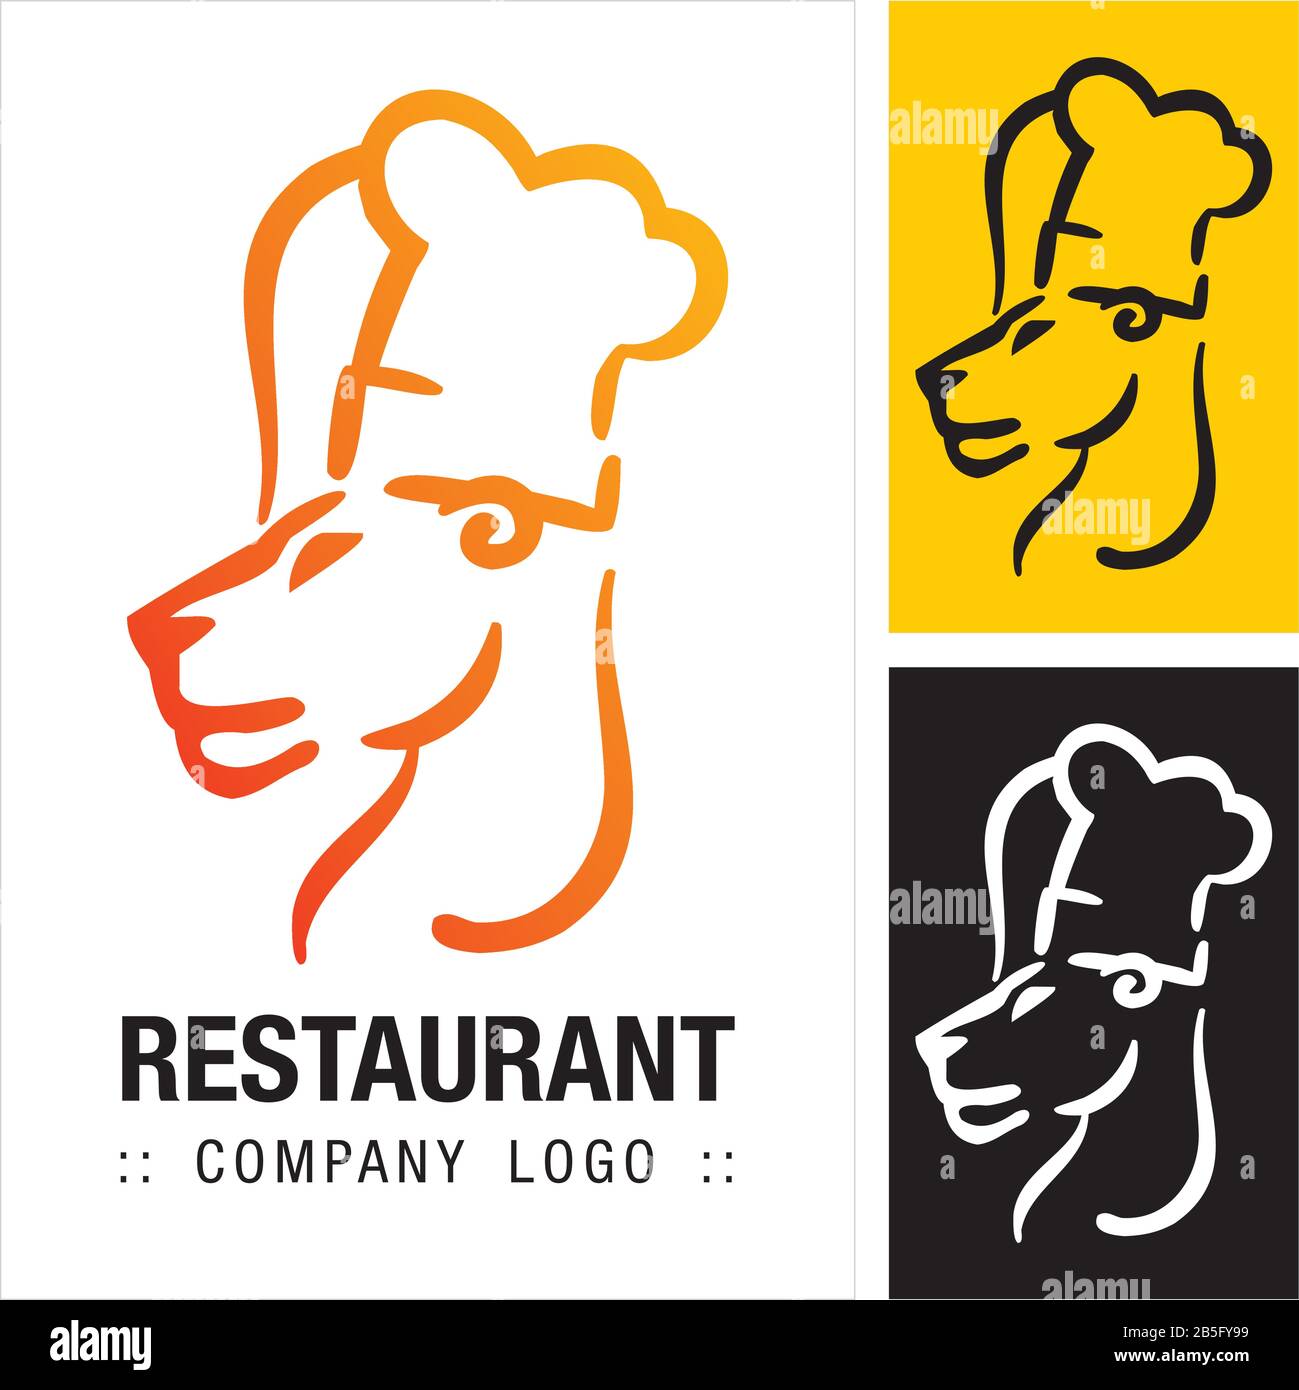 Logo (Logotipo) Di Chef Lion (Lioness) Vector Symbol Company (Restaurant). Illustrazione Dell'Icona Stile Di Cottura. Elegante Concetto Di Identità Moderna Idea Di Design Illustrazione Vettoriale